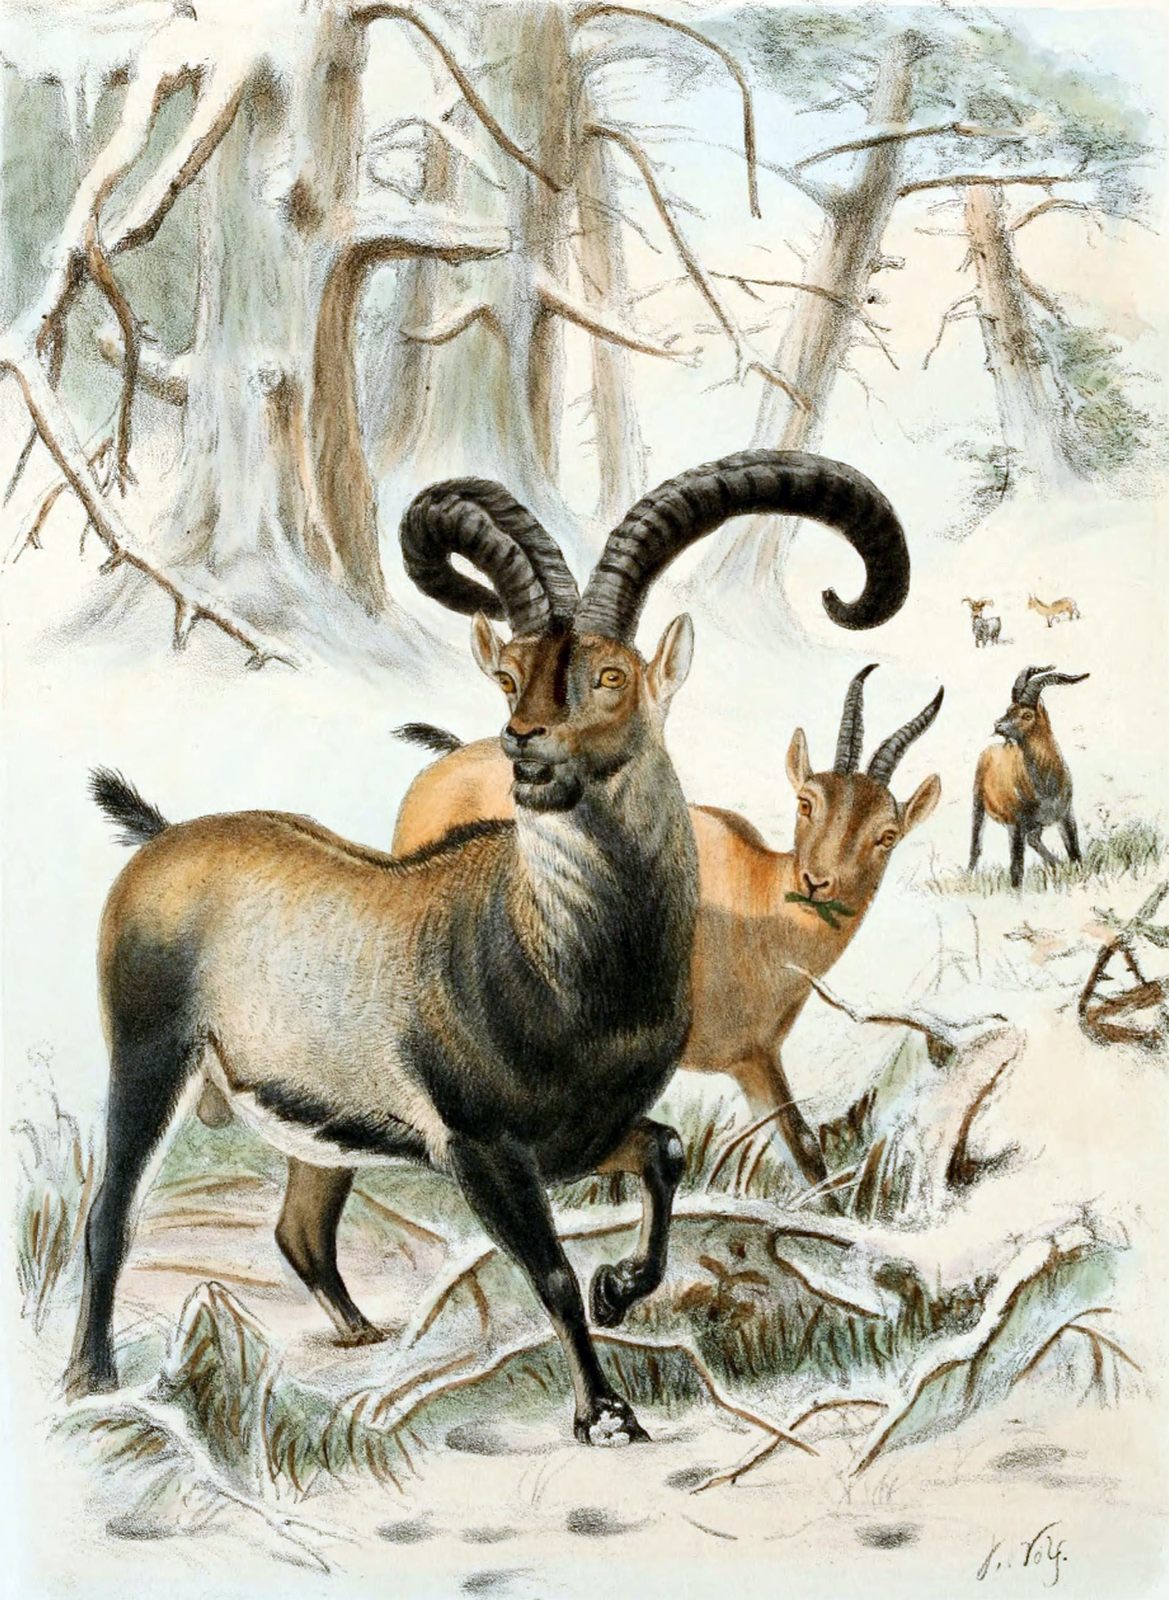 Ilustracja przedstawia w zimowym pejzażu leśnym trzy brązowe zwierzęta z rogami. Samiec na pierwszym planie ma ciemniej ubarwioną szyję, pierś i nogi. Jego rogi są długie i wygięte. To koziorożec pirenejski, gatunek wymarły.